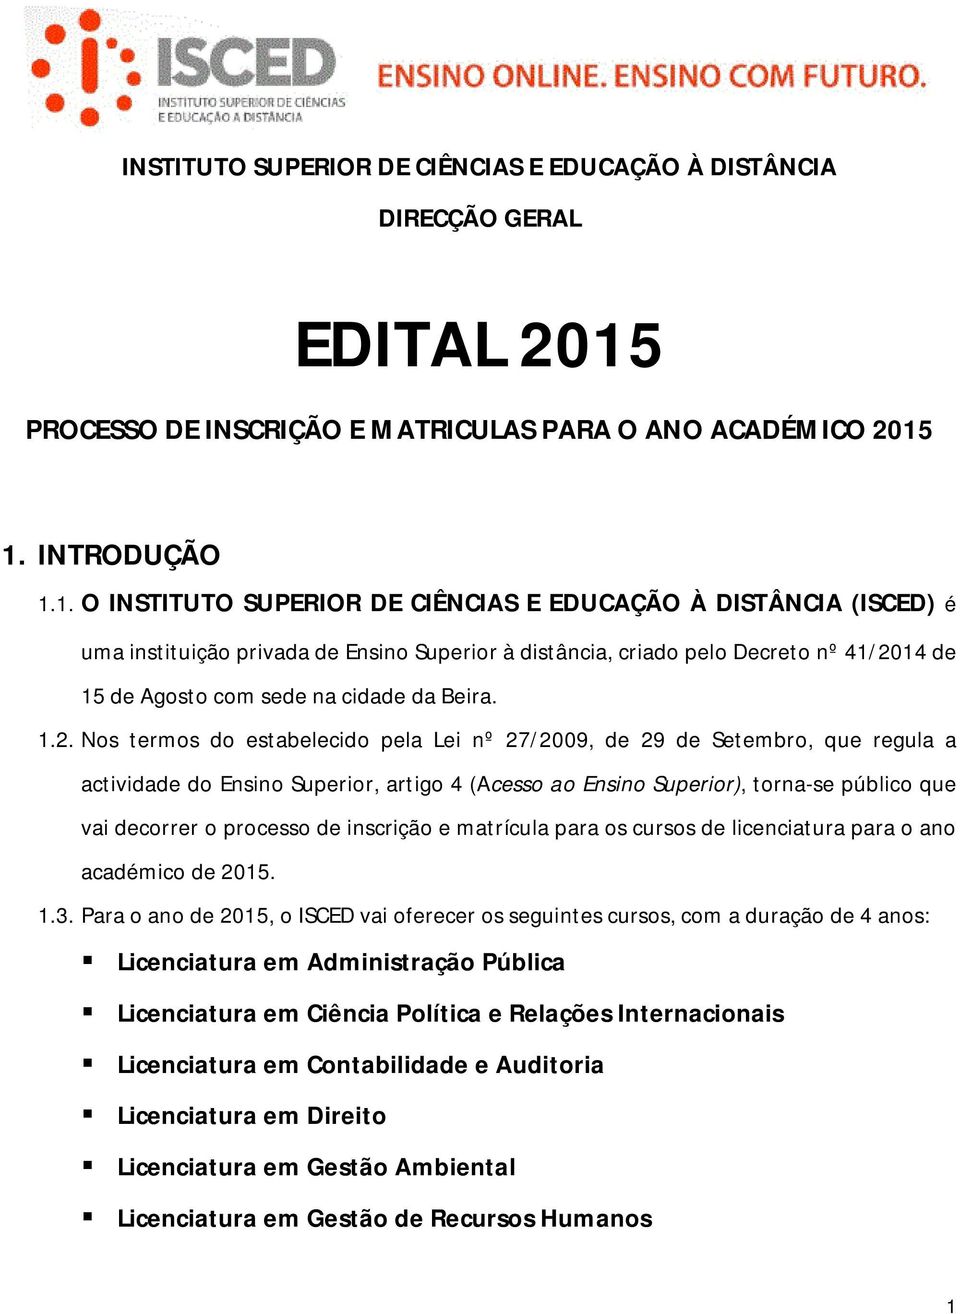 1. INTRODUÇÃO 1.1. O INSTITUTO SUPERIOR DE CIÊNCIAS E EDUCAÇÃO À DISTÂNCIA (ISCED) é uma instituição privada de Ensino Superior à distância, criado pelo Decreto nº 41/2014 de 15 de Agosto com sede na cidade da Beira.